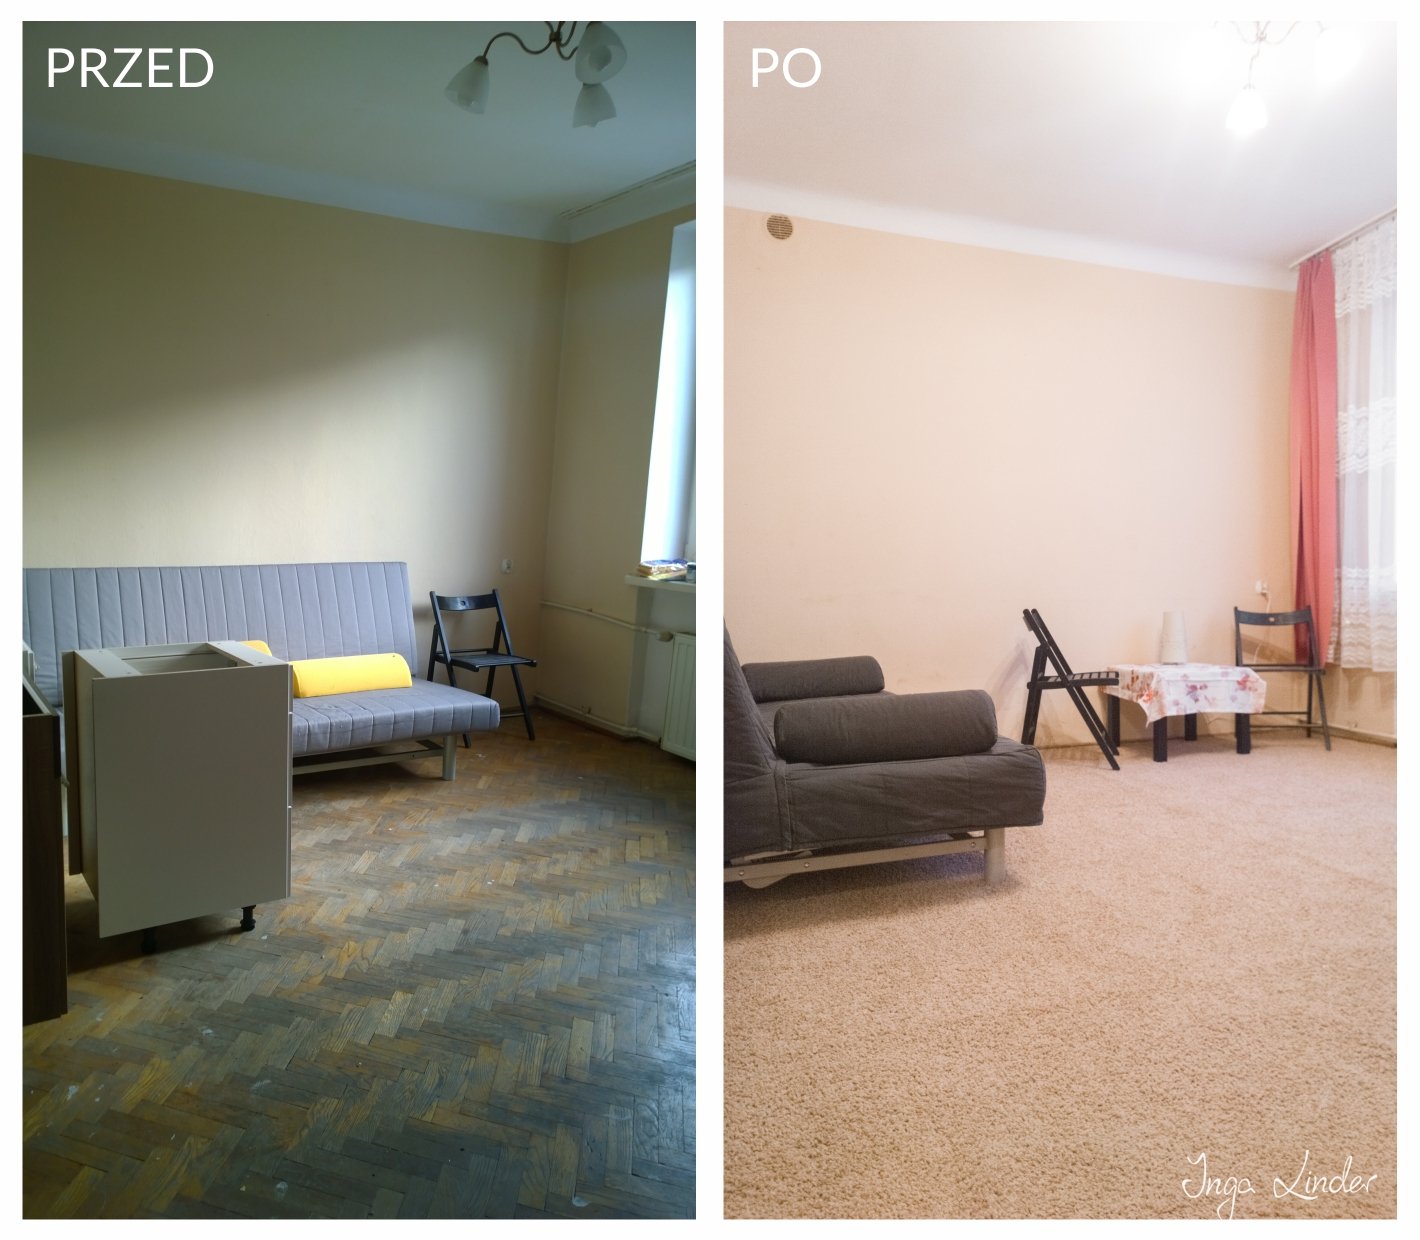 Remont mieszkania na wynajem - pokój - przed i po